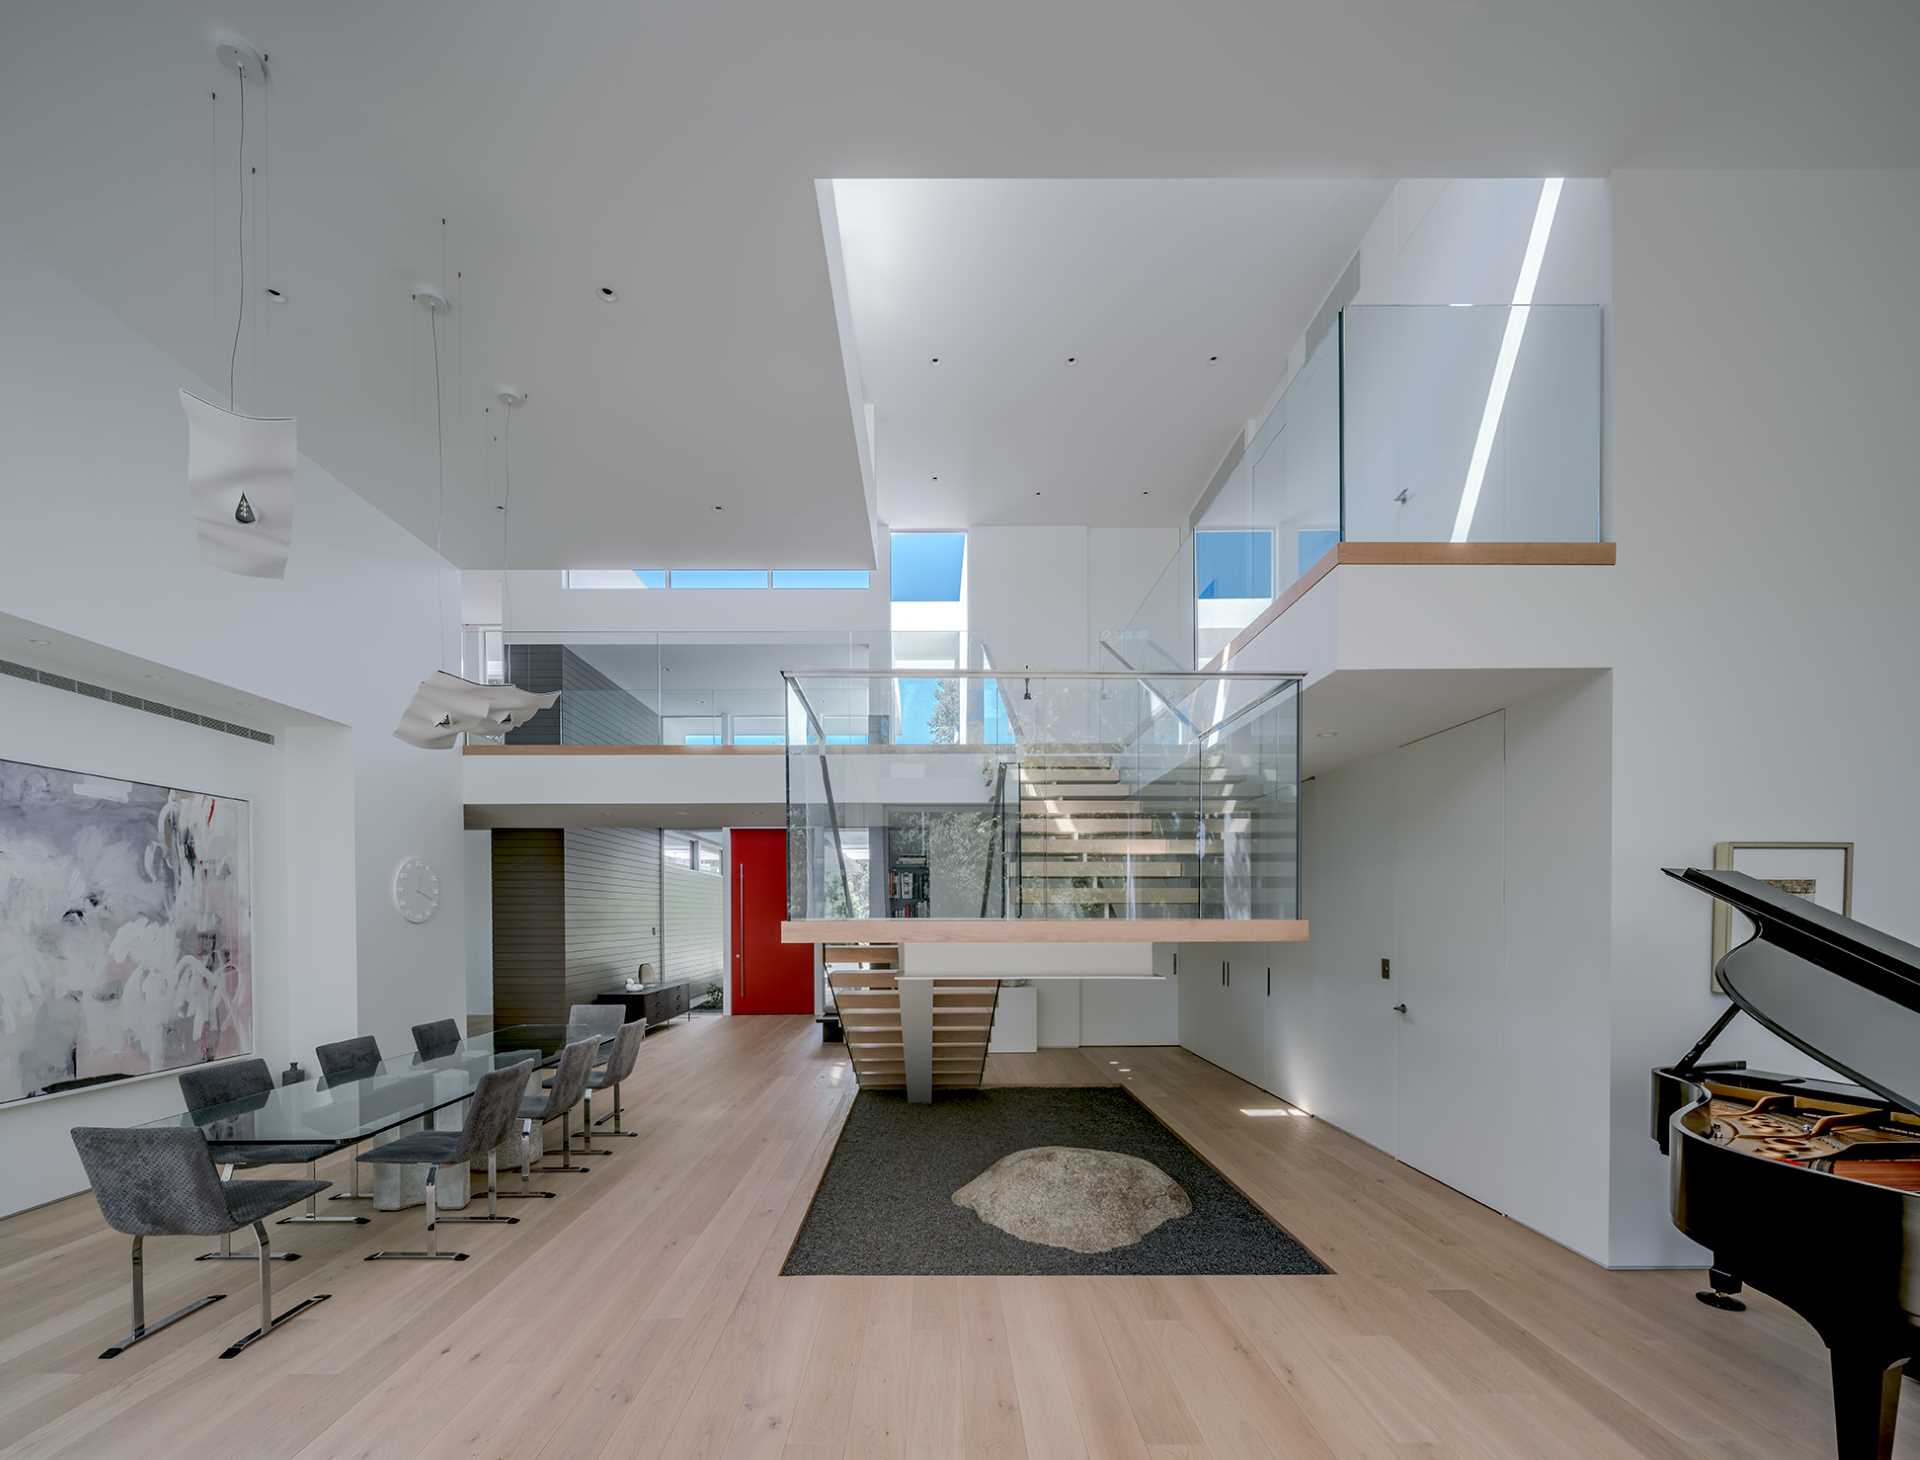 یک ورودی مدرن به سمت ناهار خوری باز می شود، میز شیشه ای بلند و سقف های بلند.